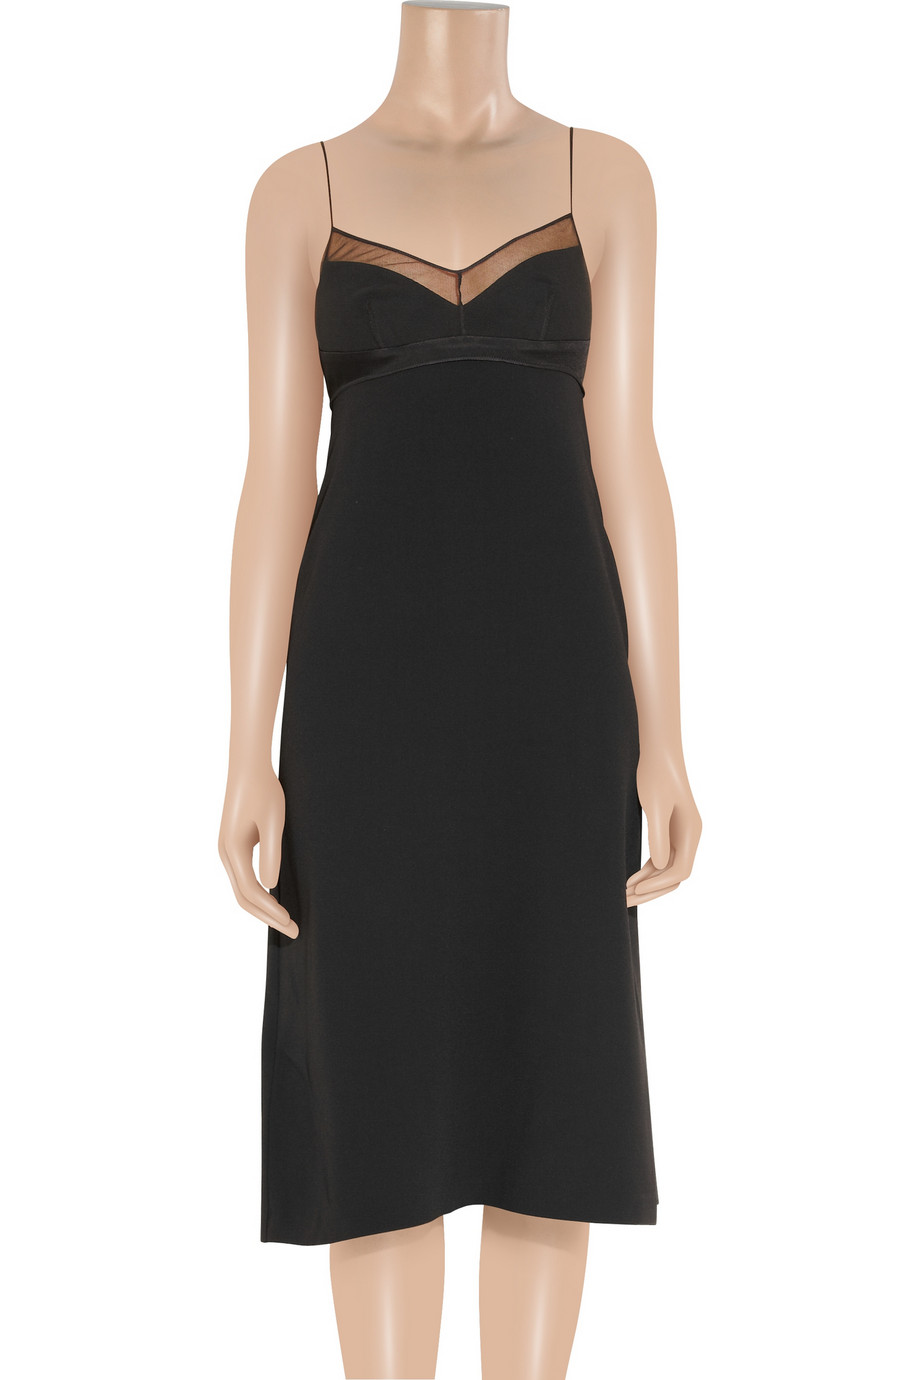 Lyst - Calvin Klein Koko Stretchcrepe Slip Dress in Black